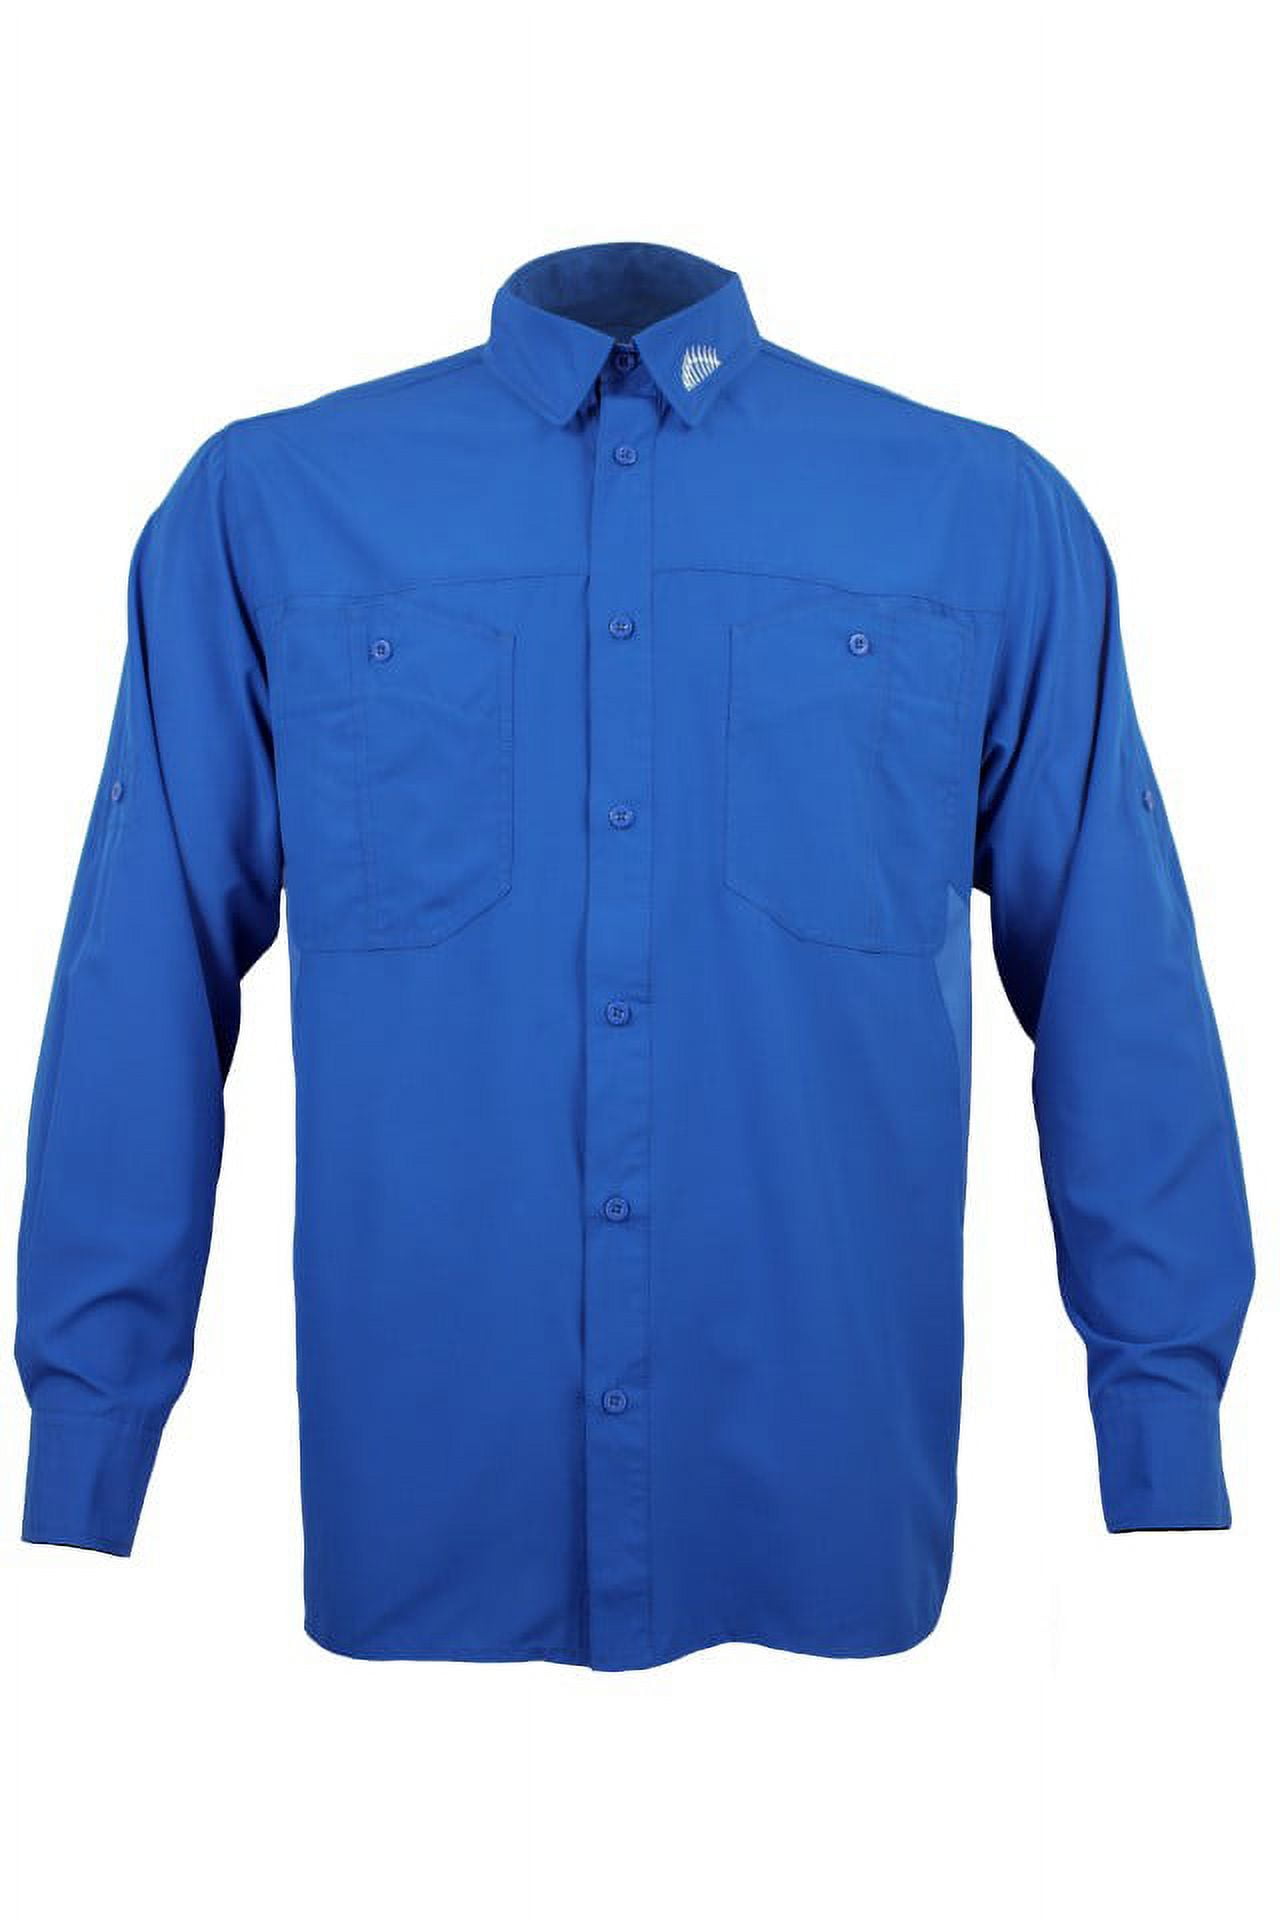 Habit Long Sleeve Vented Shirt 2XL XXL Button front - Depop